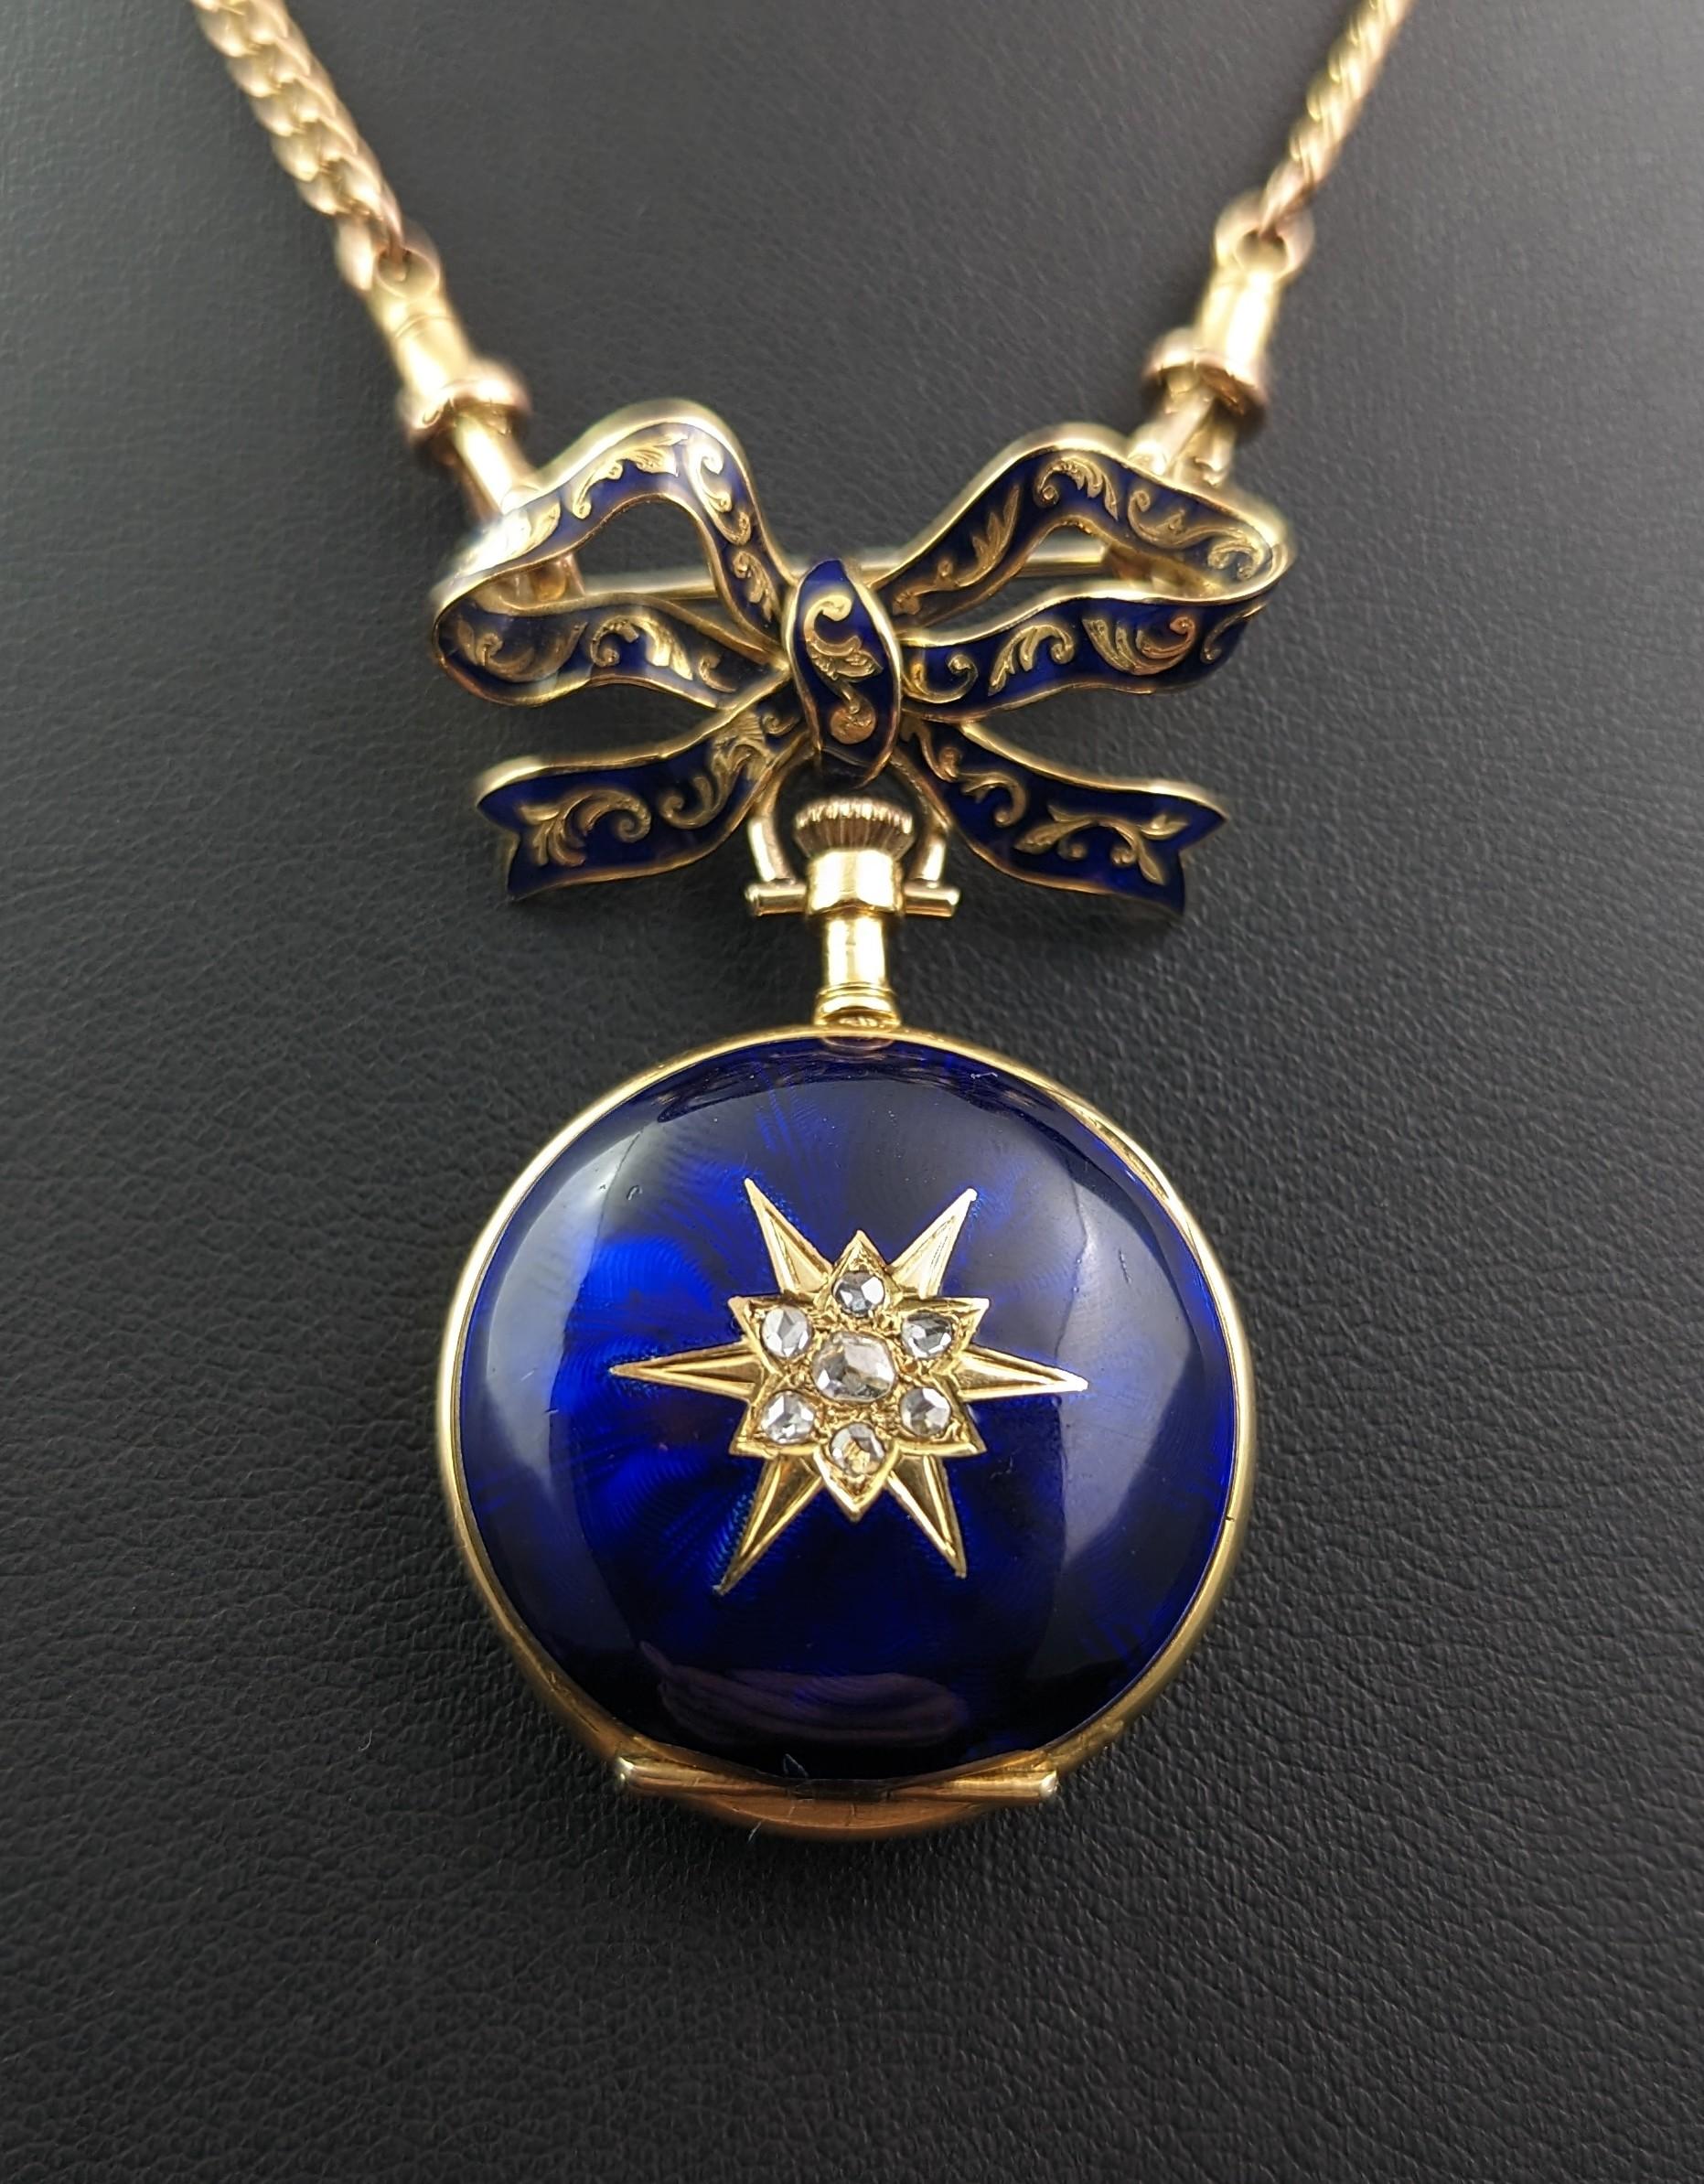 Women's Antique Diamond Star Fob Watch, 18k Gold, Blue Enamel, Bow Brooch